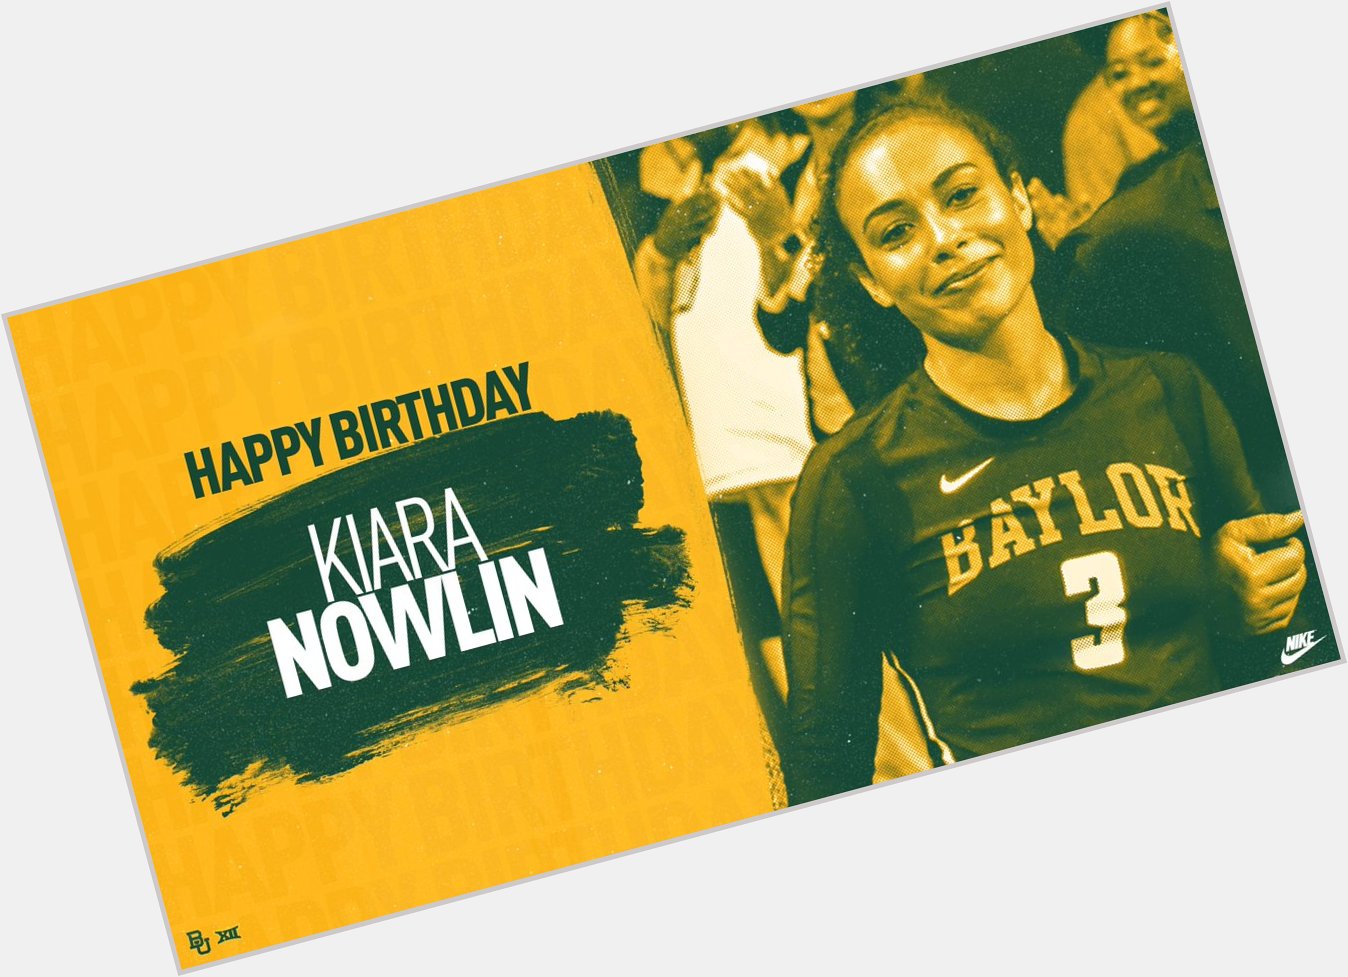  Wishing a Happy Birthday to Kiara Nowlin!  